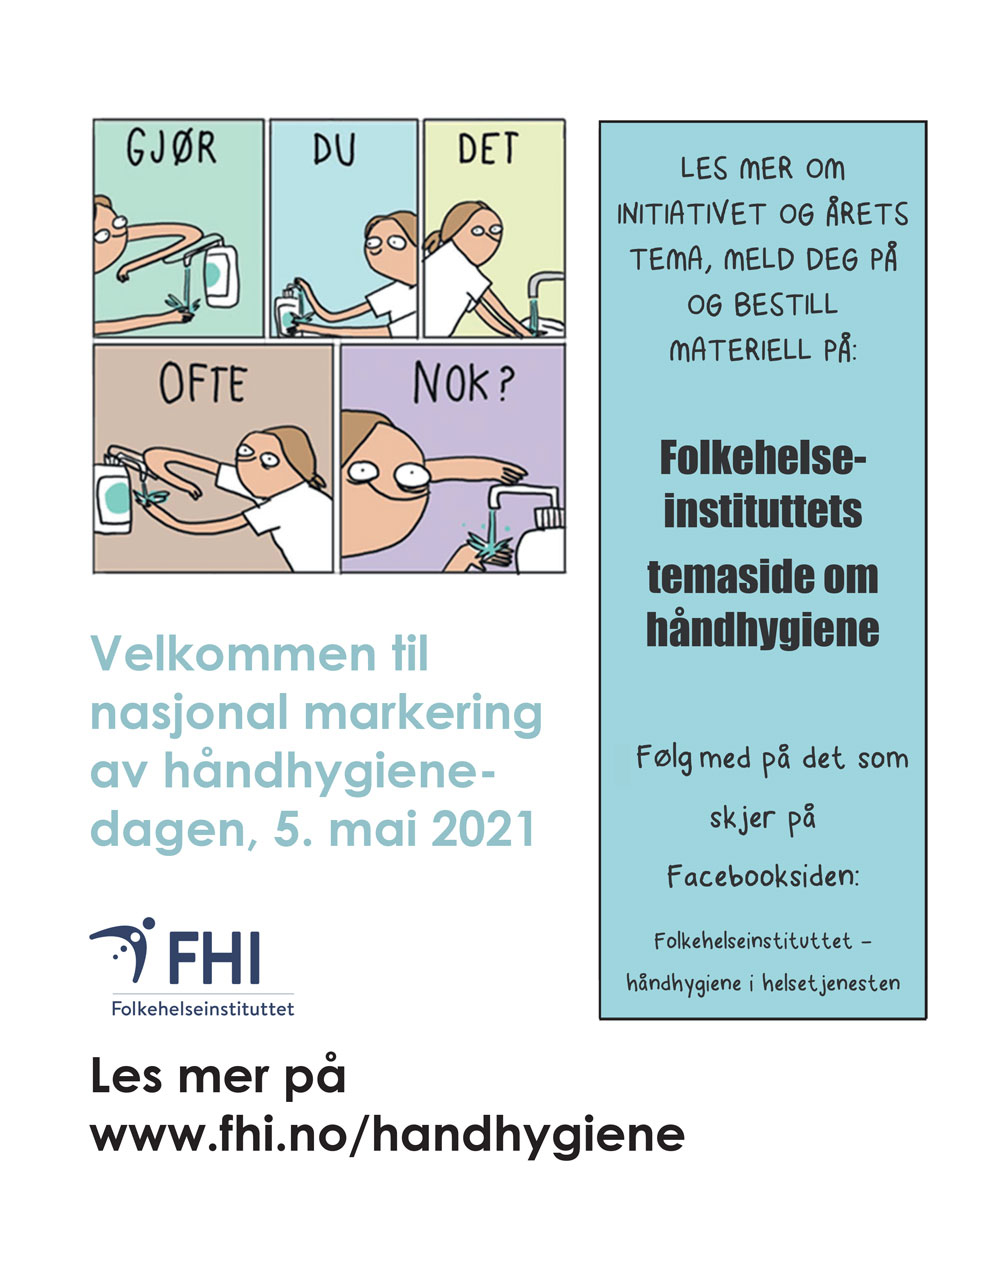 illustrasjon: Handhygienedagen 5. mai